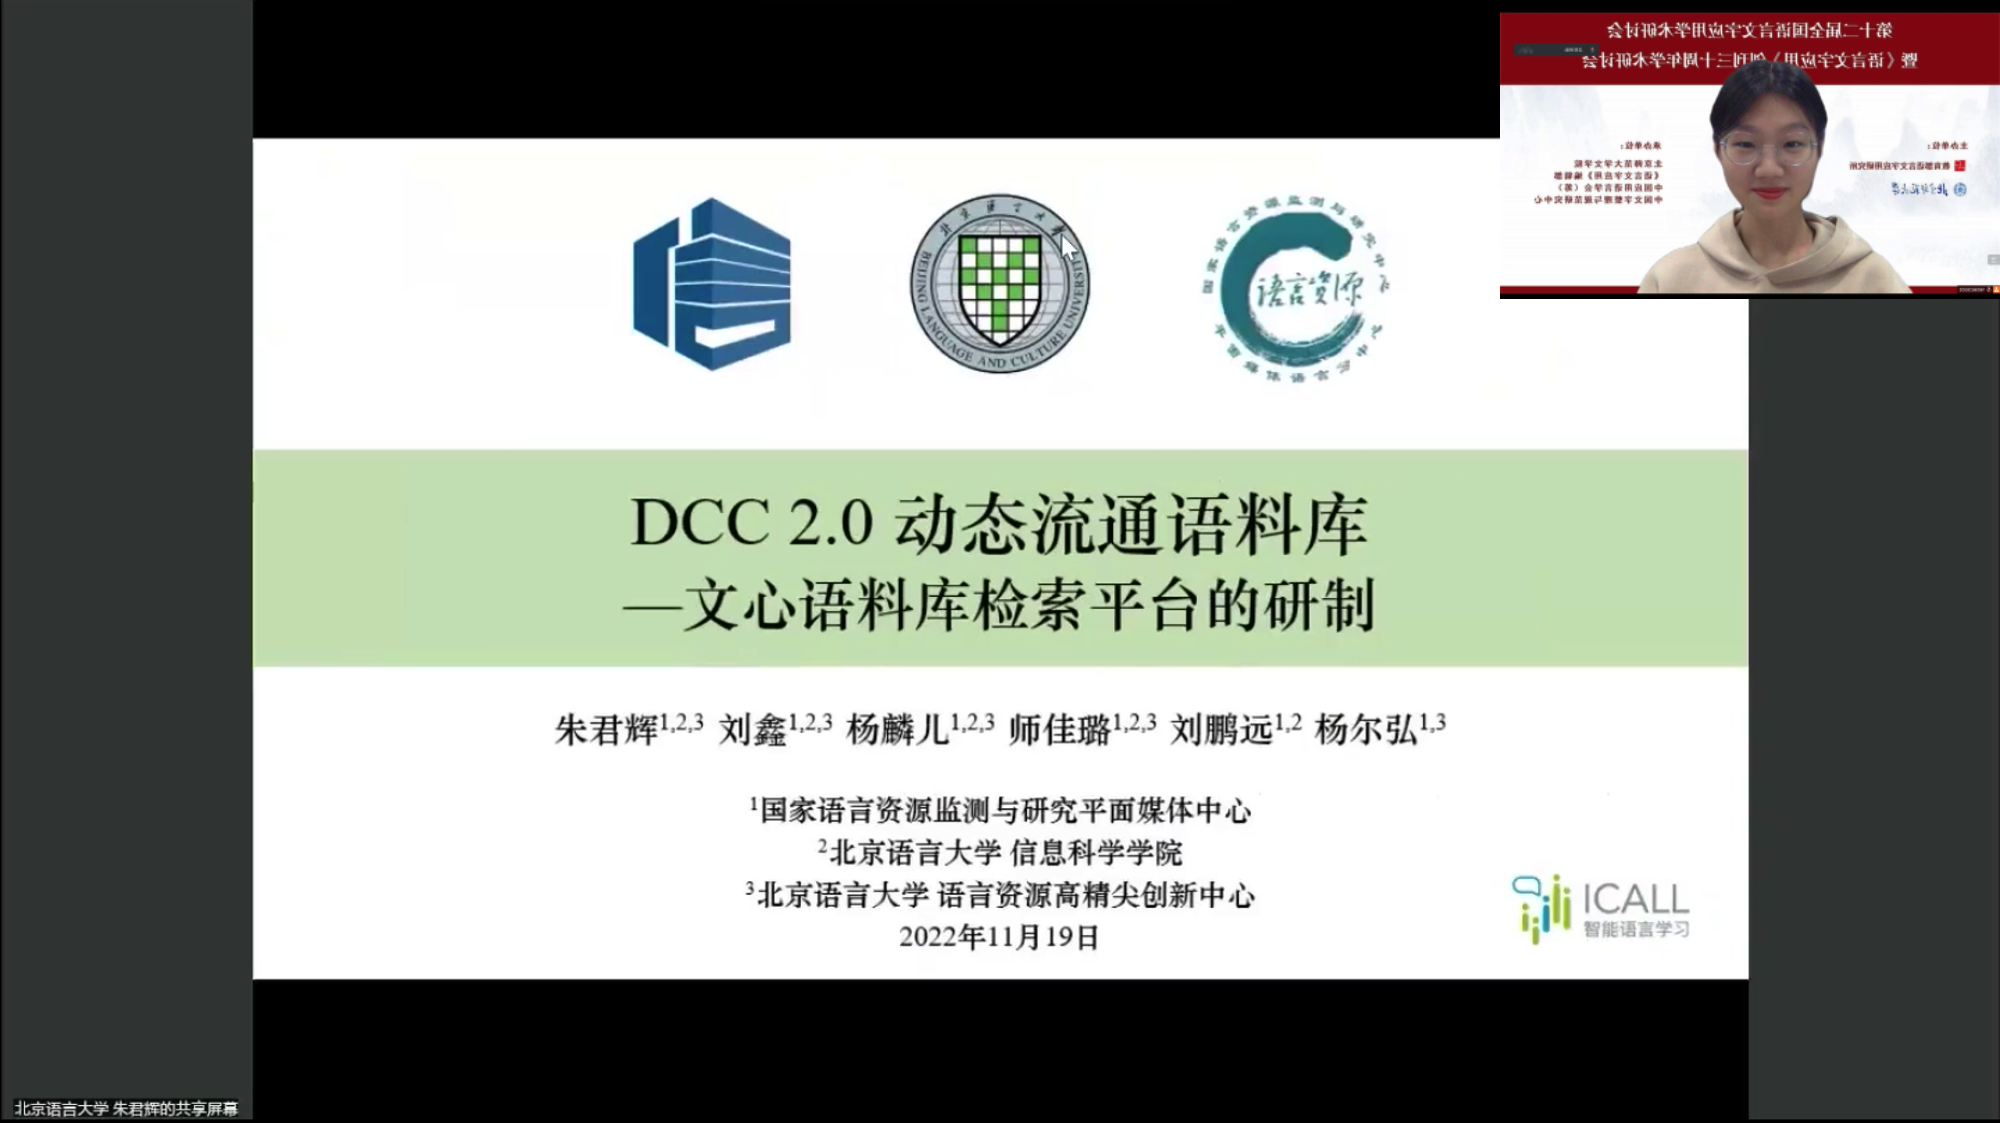 新闻 \| 国家语言资源动态流通语料库DCC 2.0发布